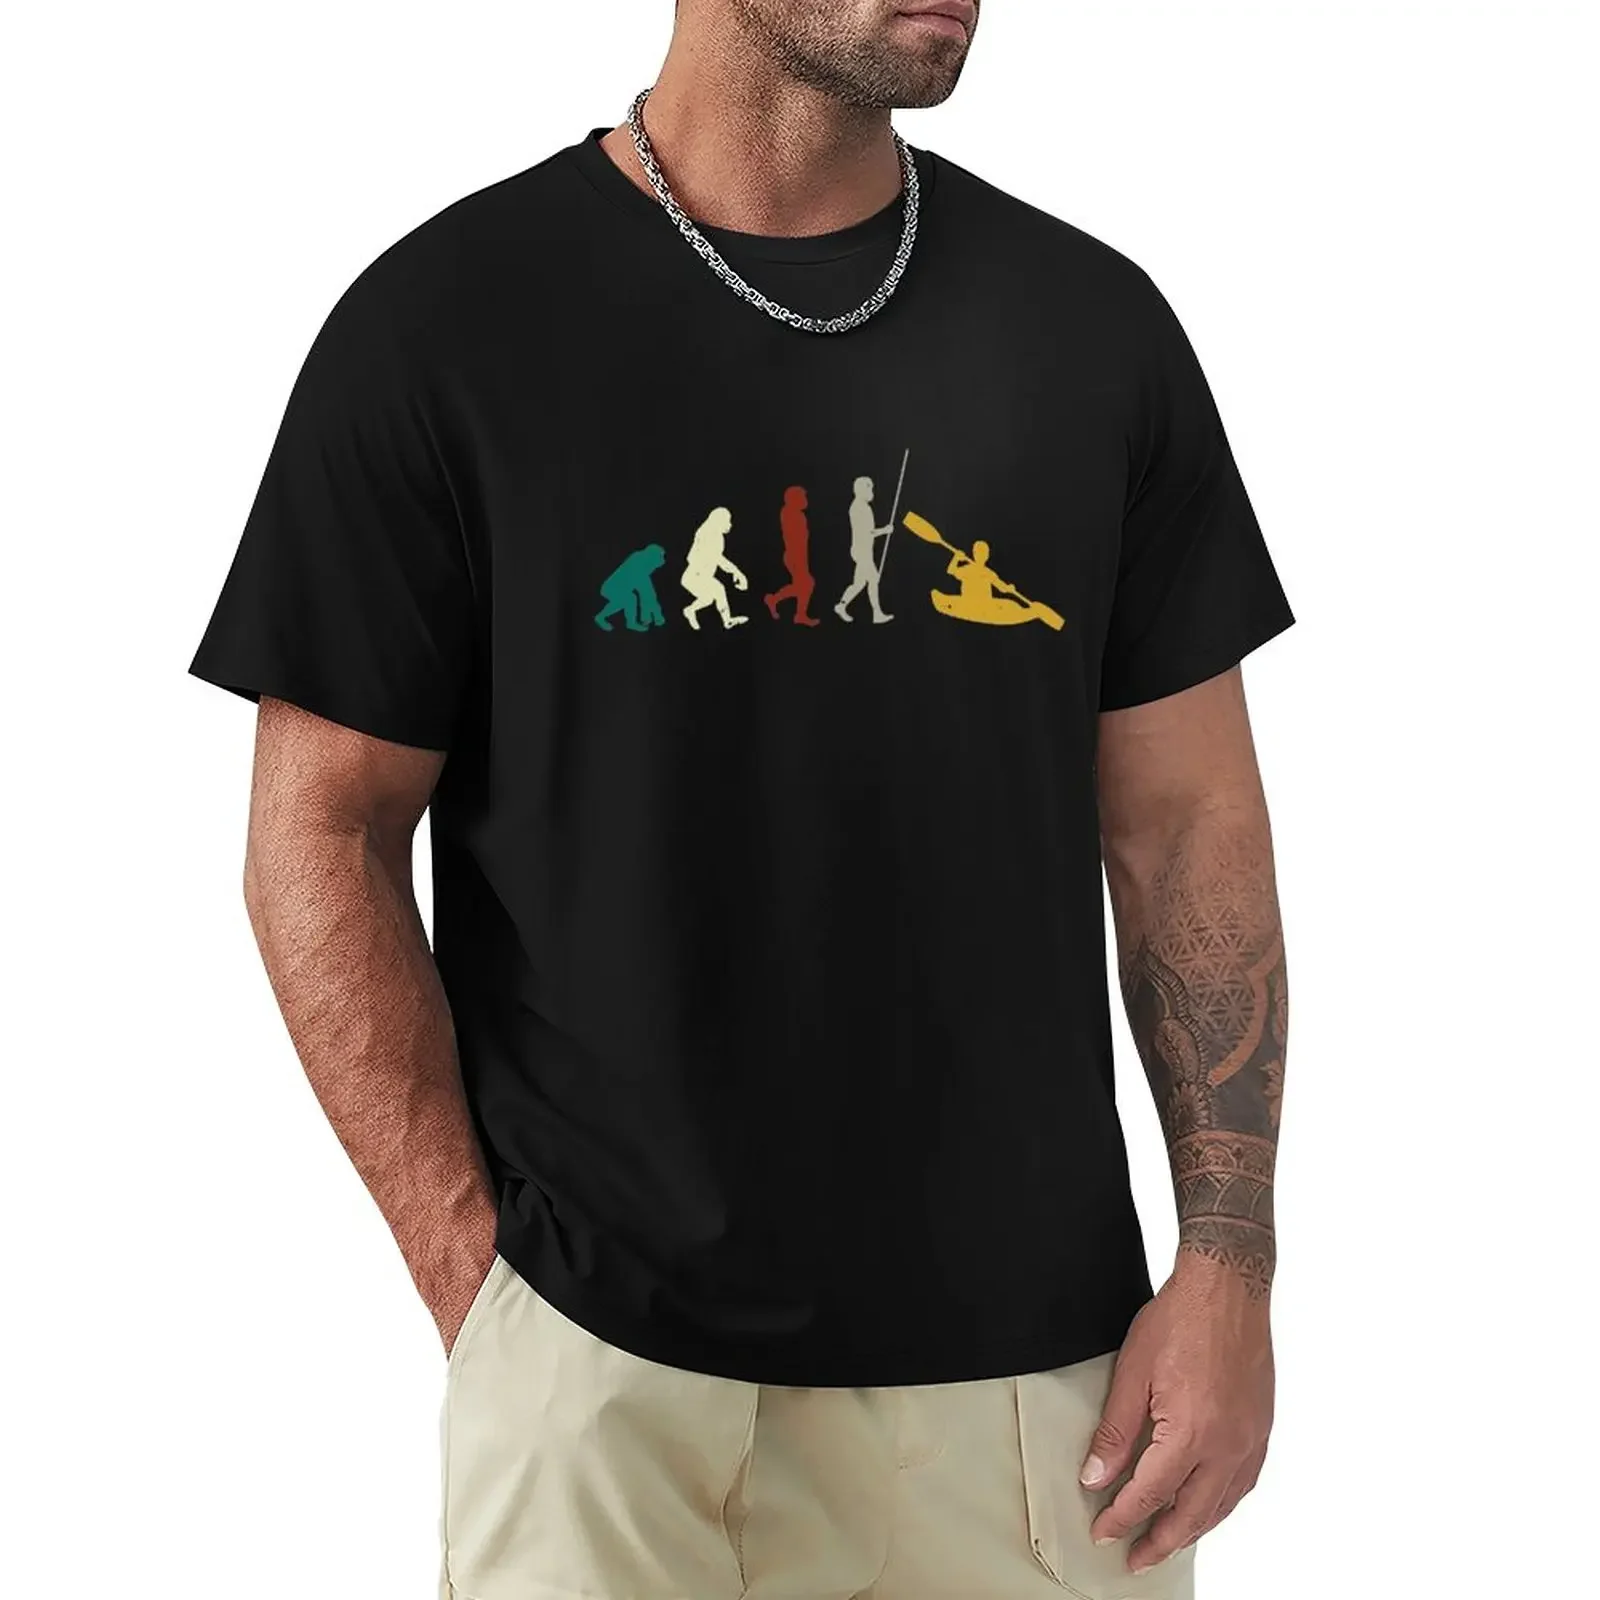 

Canoe kayak evolution paddler kayaker gift canoeing T-Shirt plus size tops summer tops t shirts for men pack